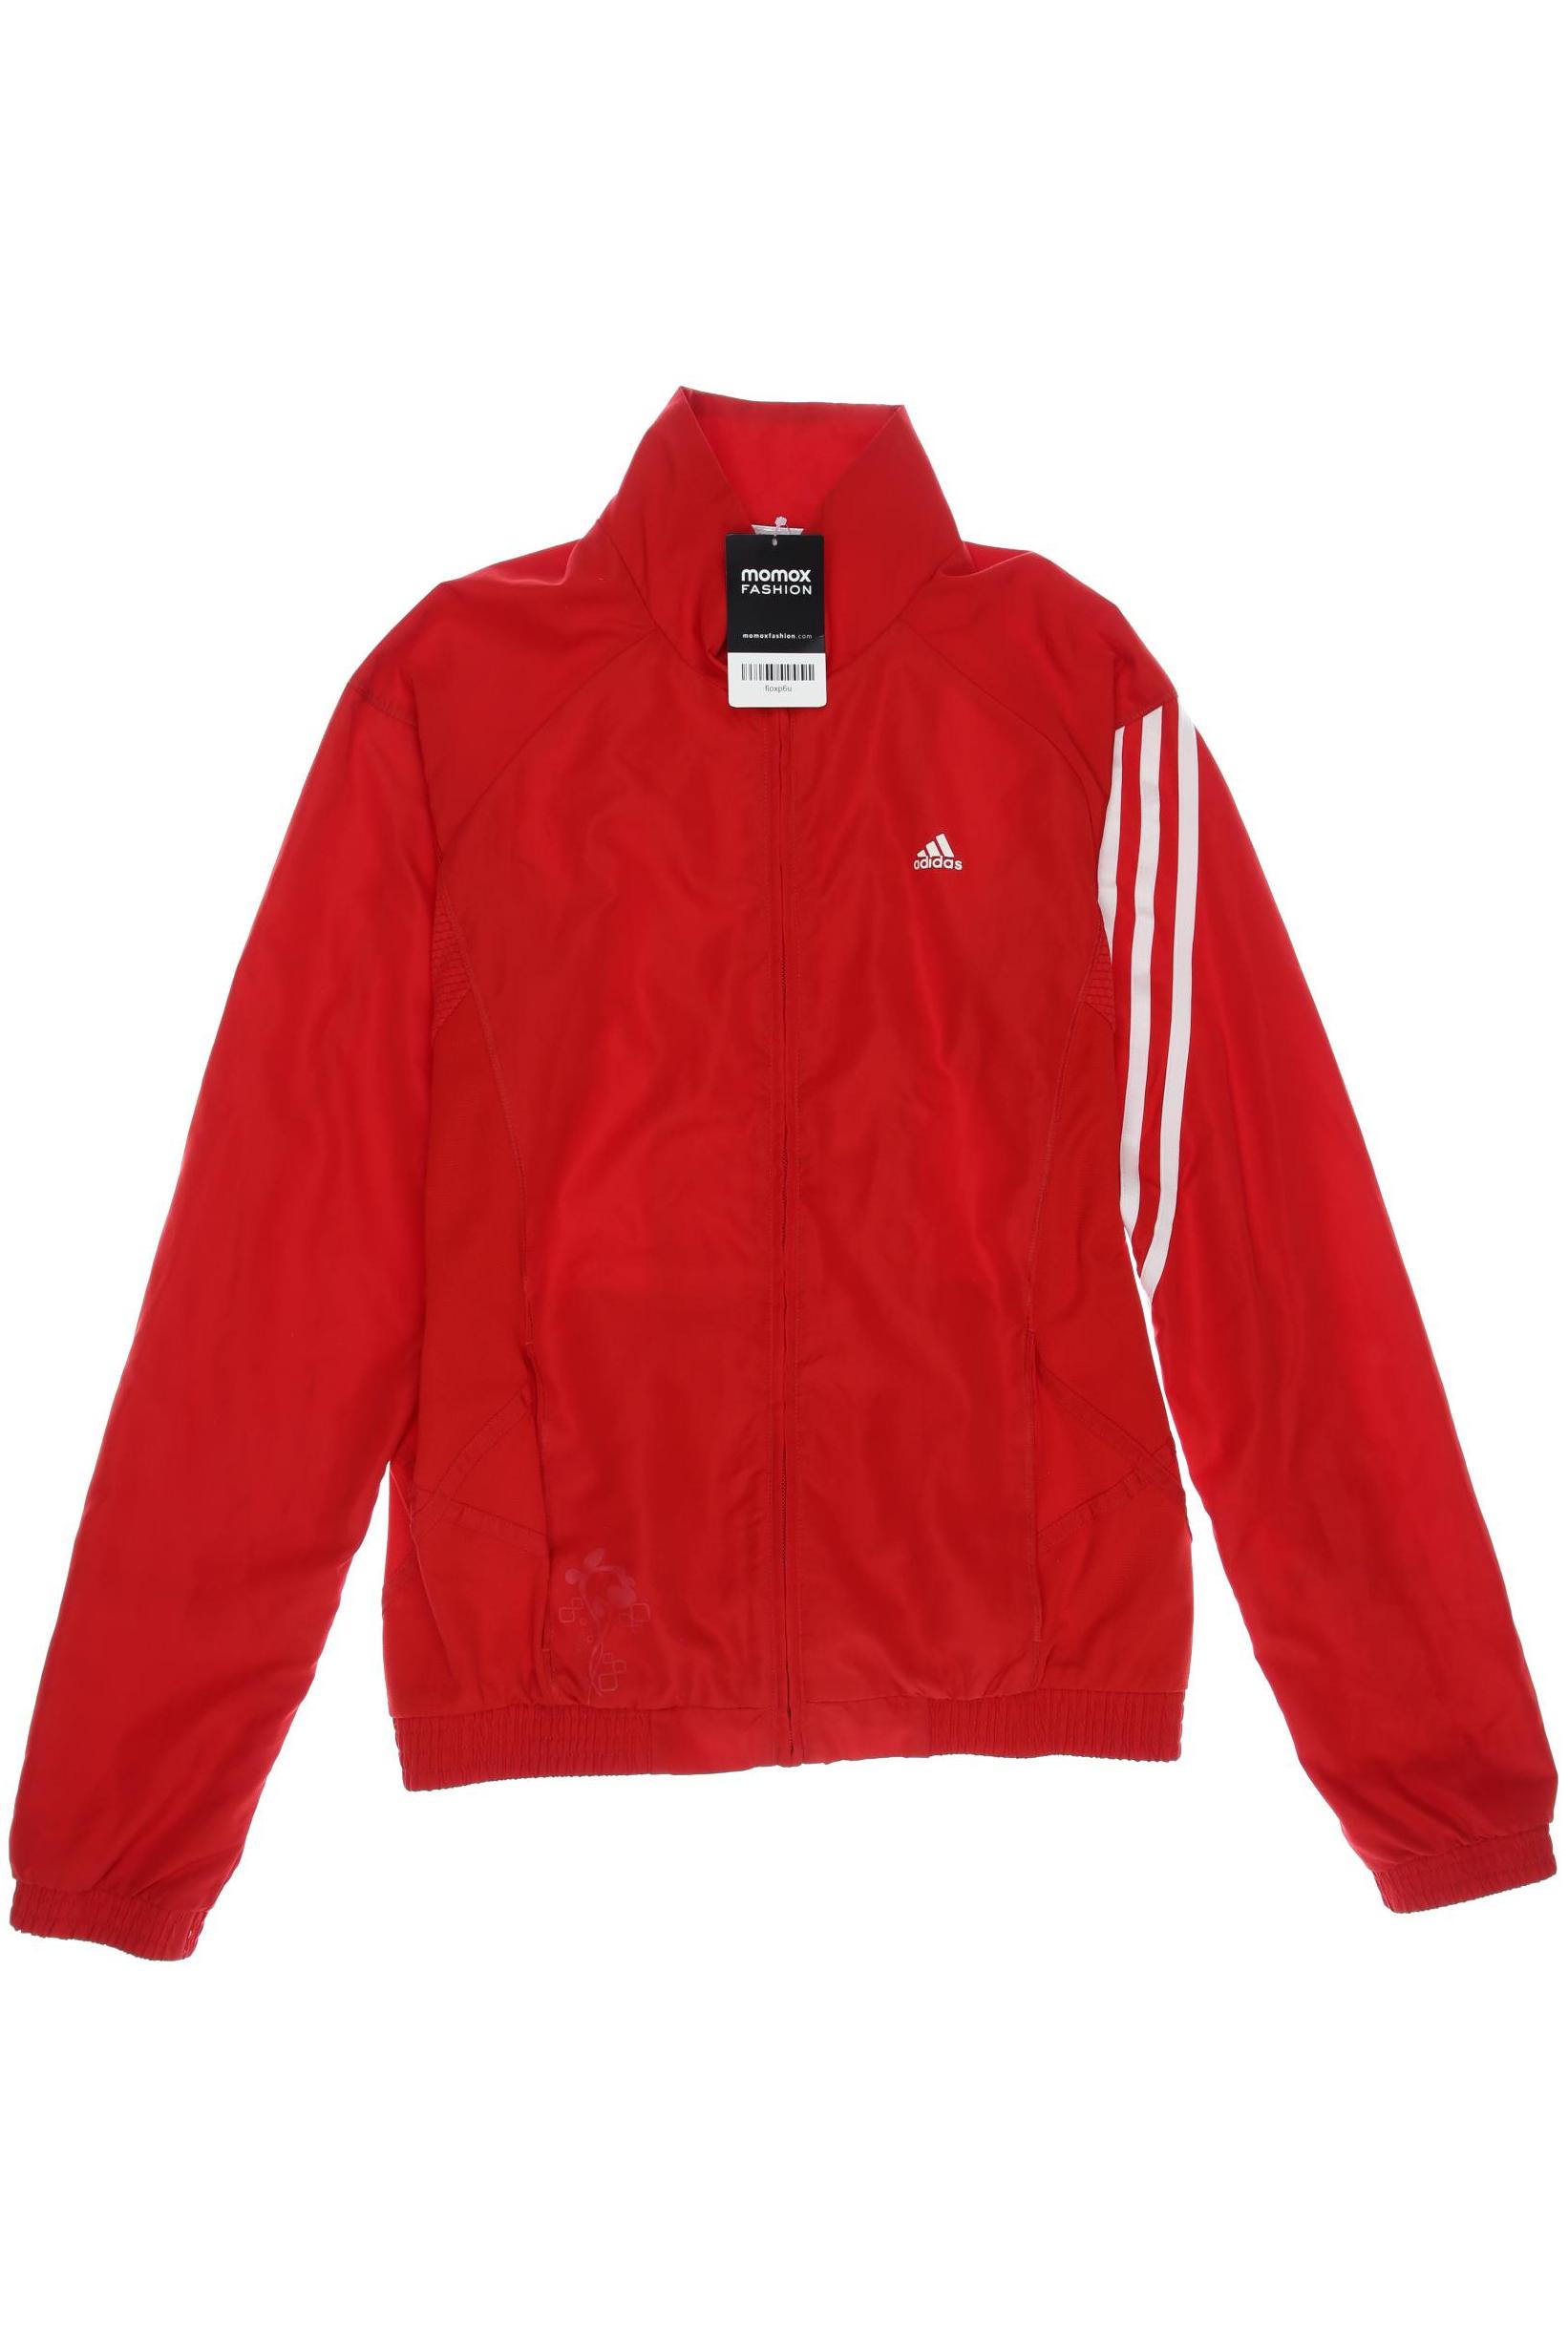 adidas Damen Jacke, rot, Gr. 176 von Adidas